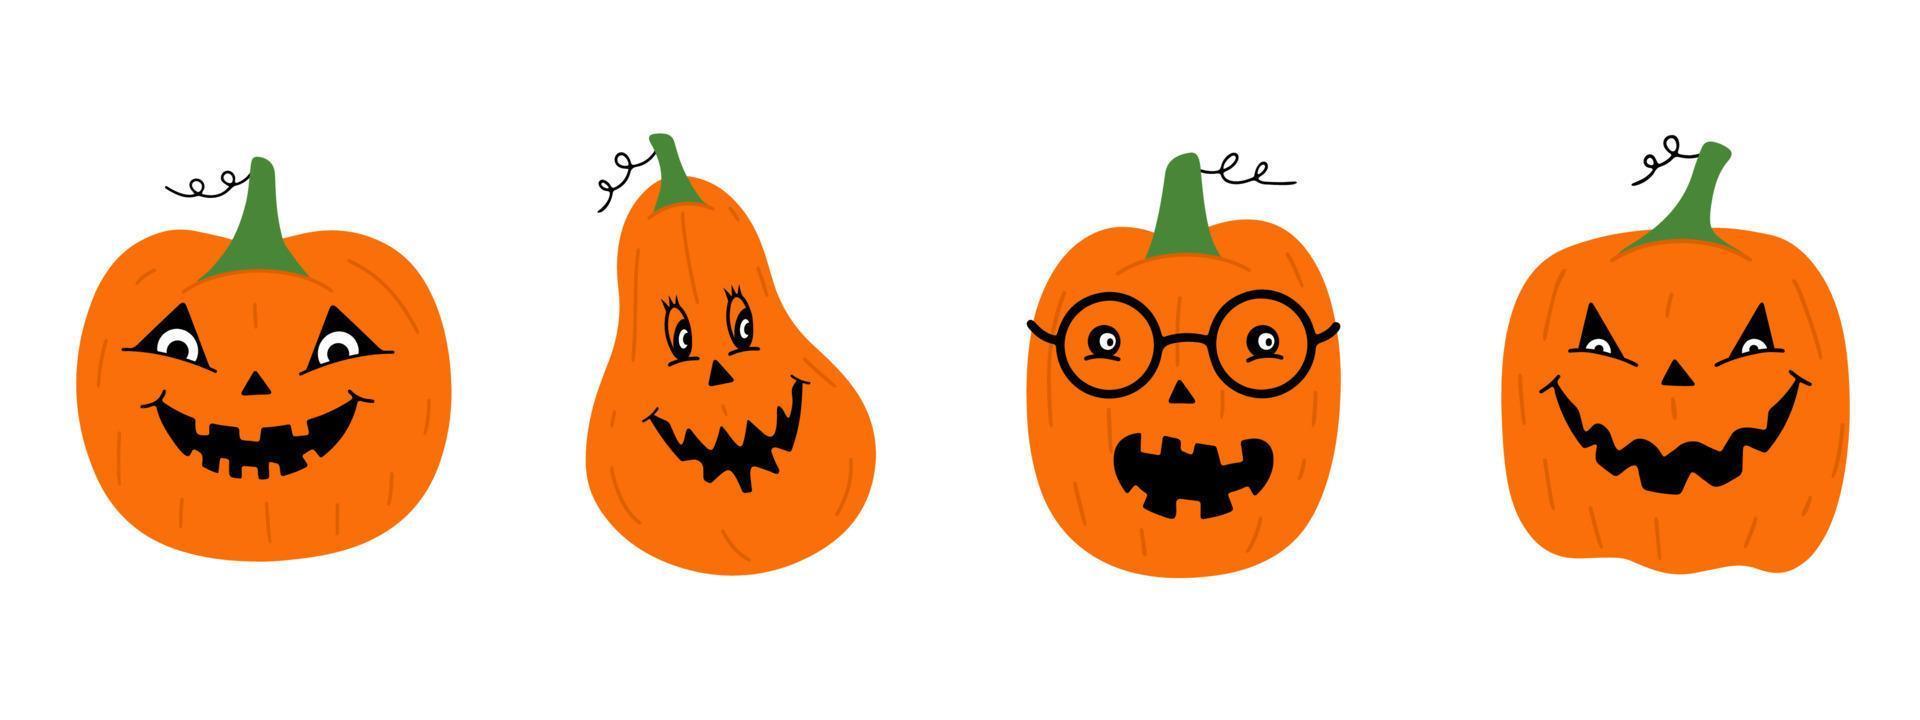 conjunto de calabazas de halloween con caras graciosas. ilustración vectorial estilo de dibujos animados vector